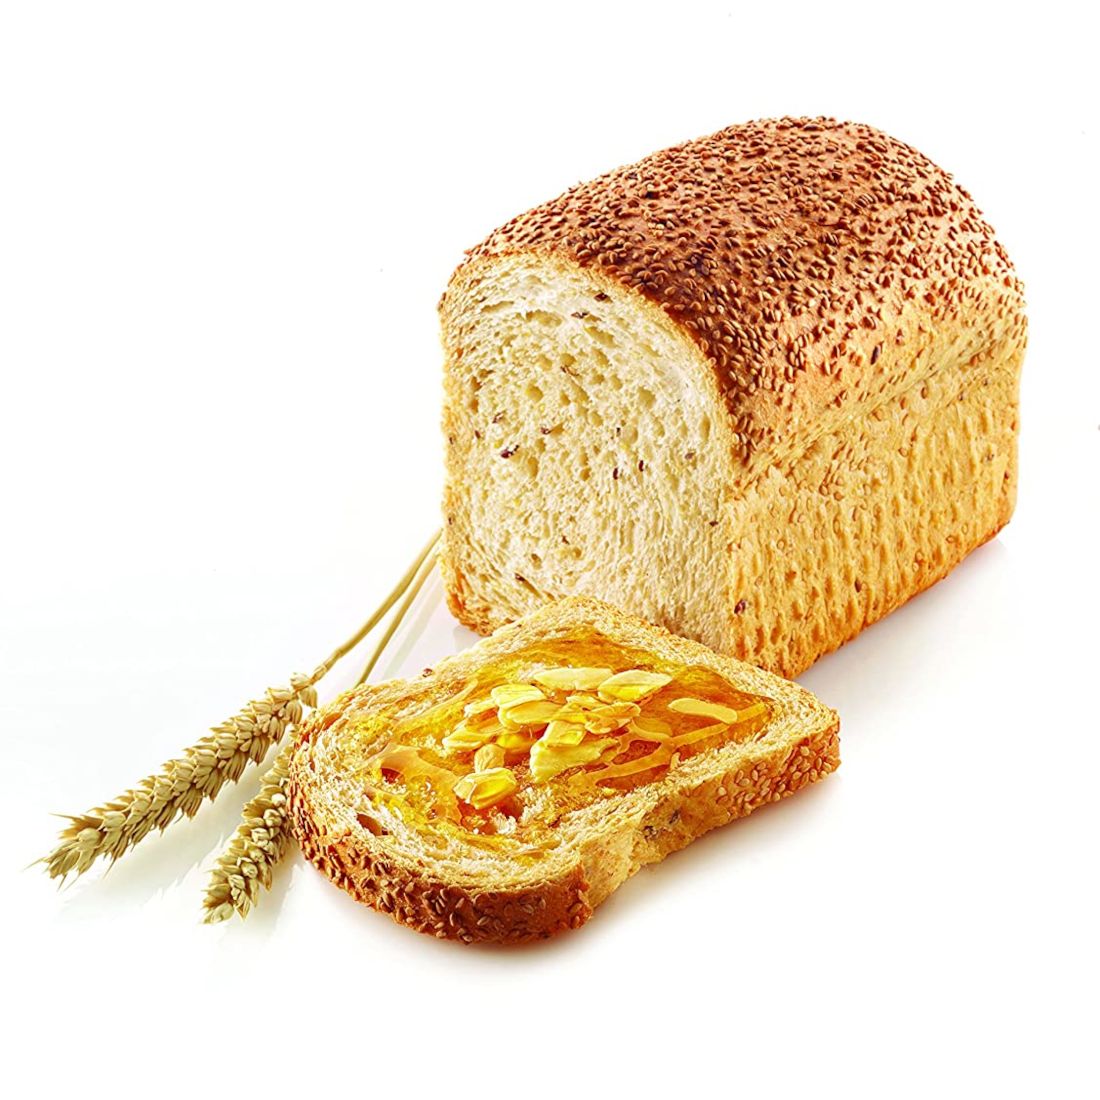 Φόρμα σιλικόνης για ψωμί τοστ Silikomart Sandwich Bread